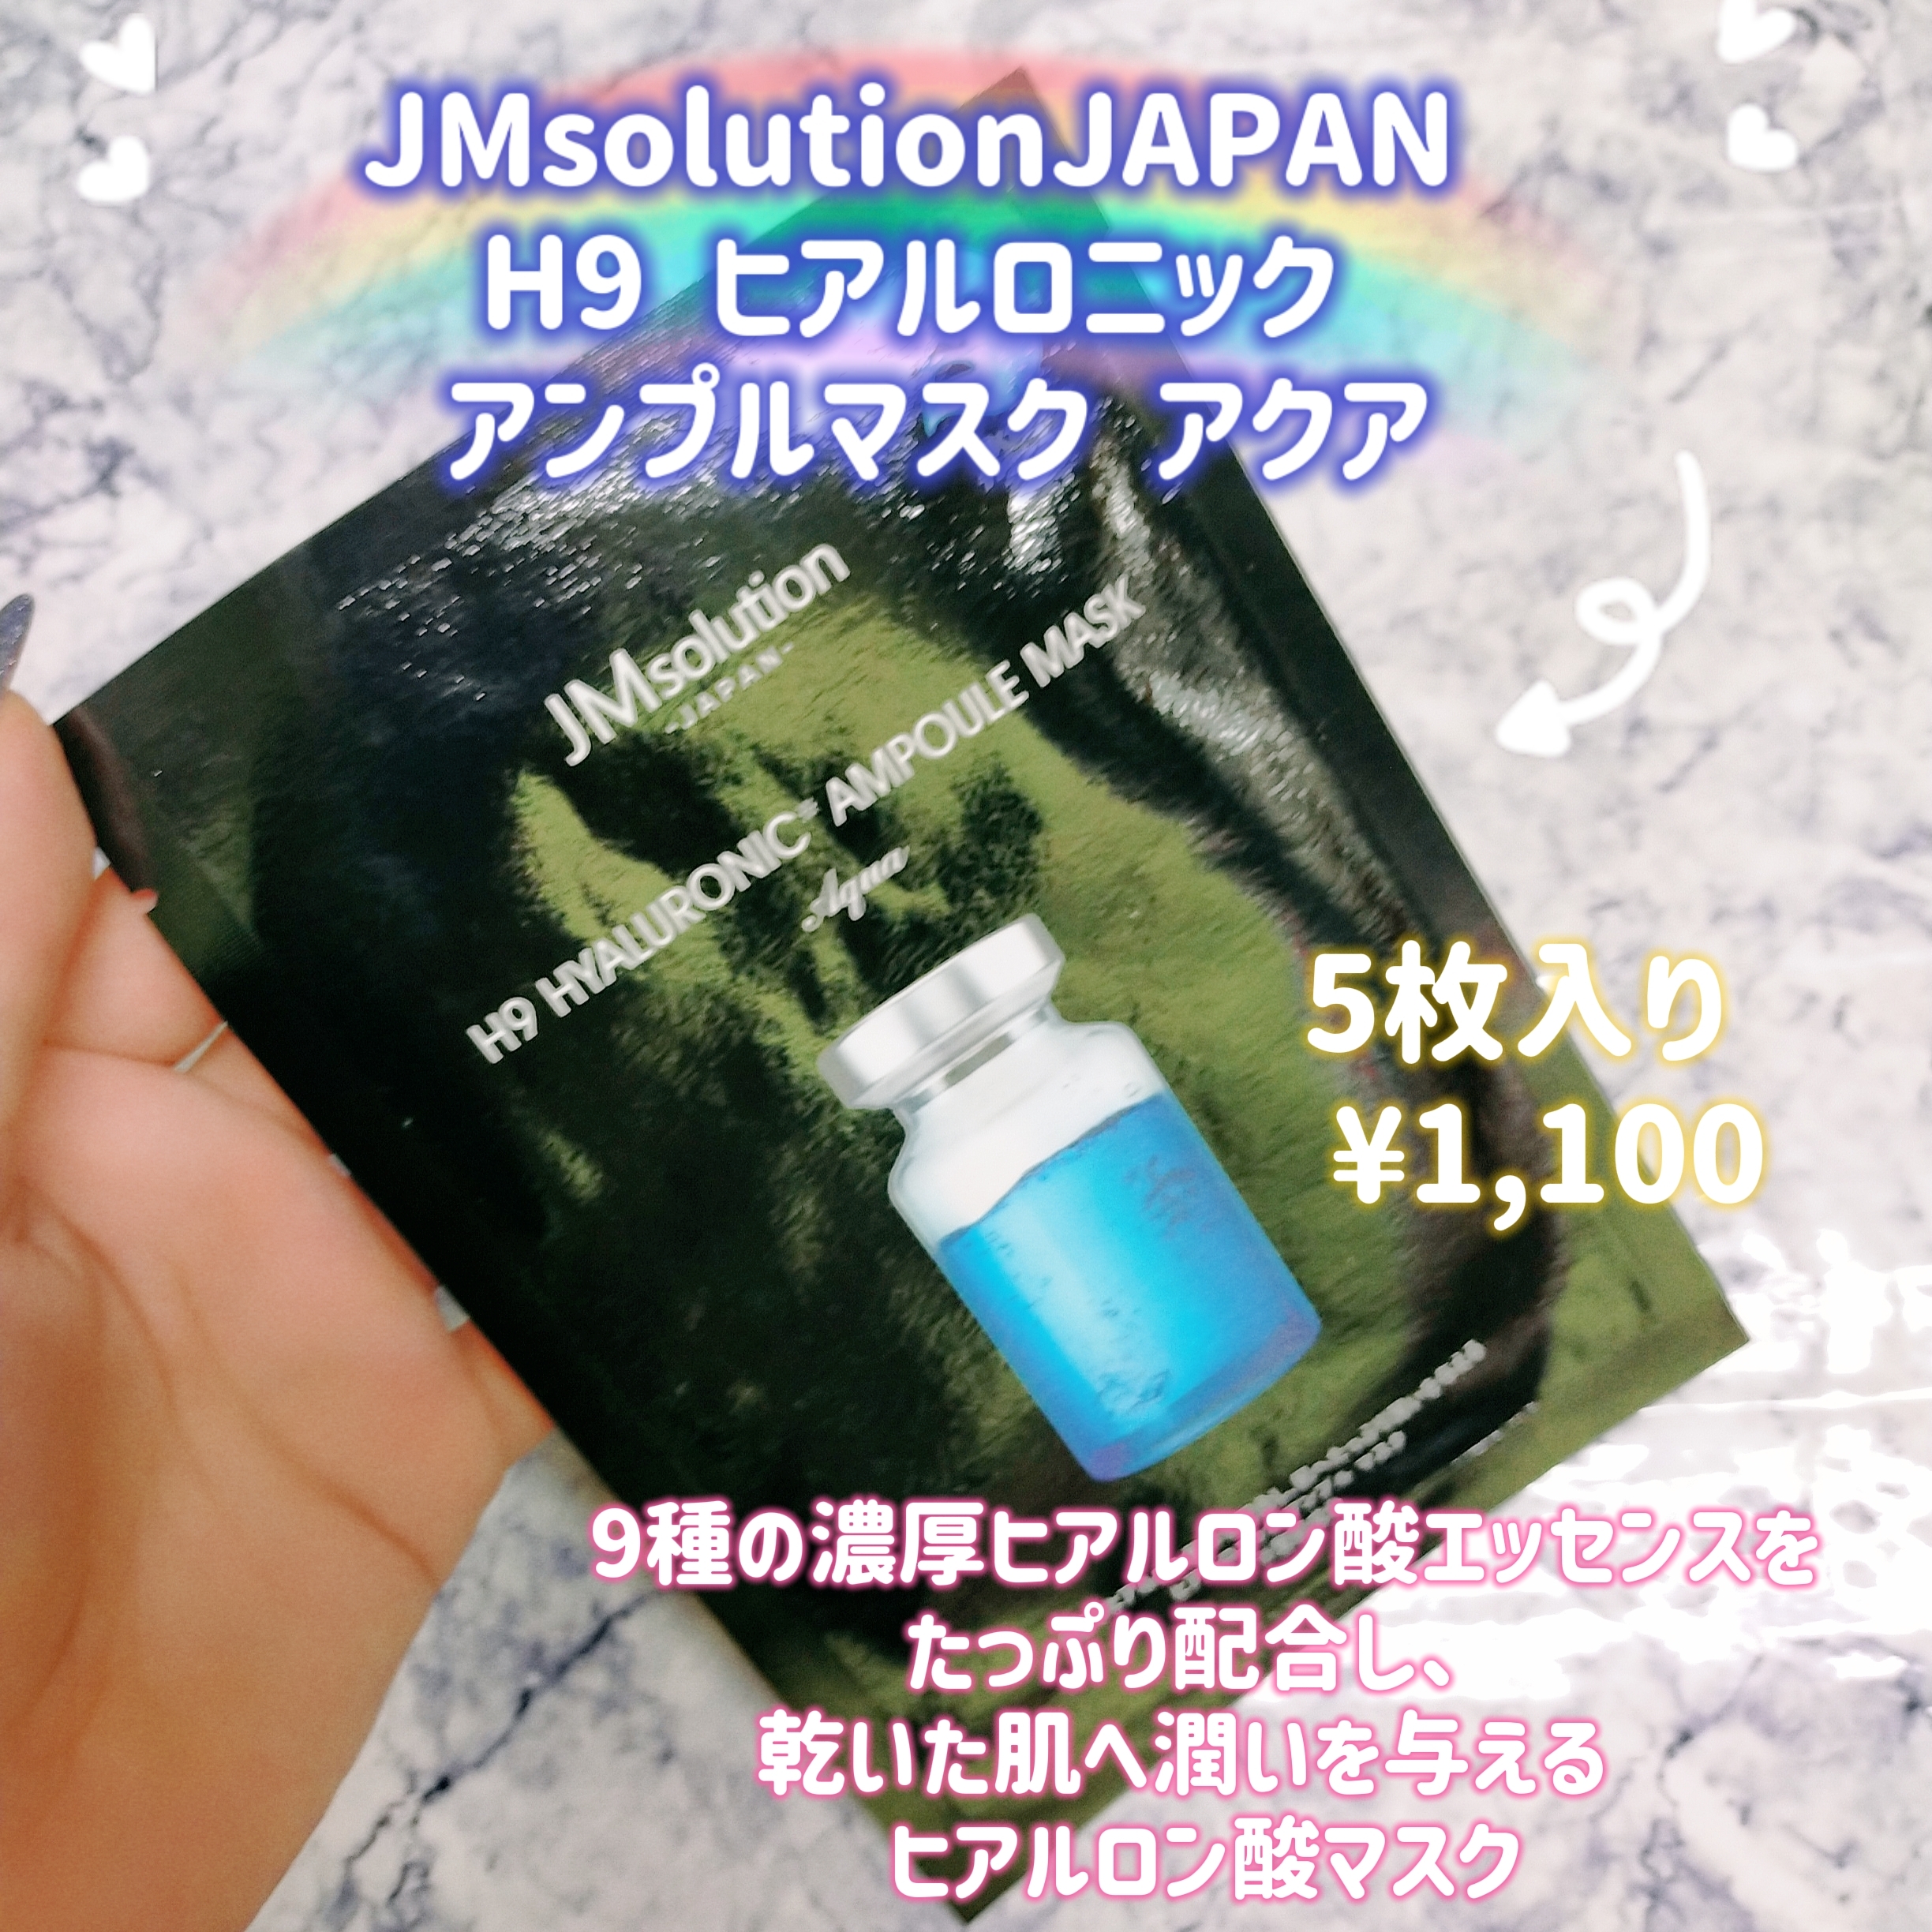 JMsolution(ジェイエムソリューション) H9 ヒアルロニック アンプルマスク アクアの良い点・メリットに関するみこさんの口コミ画像1